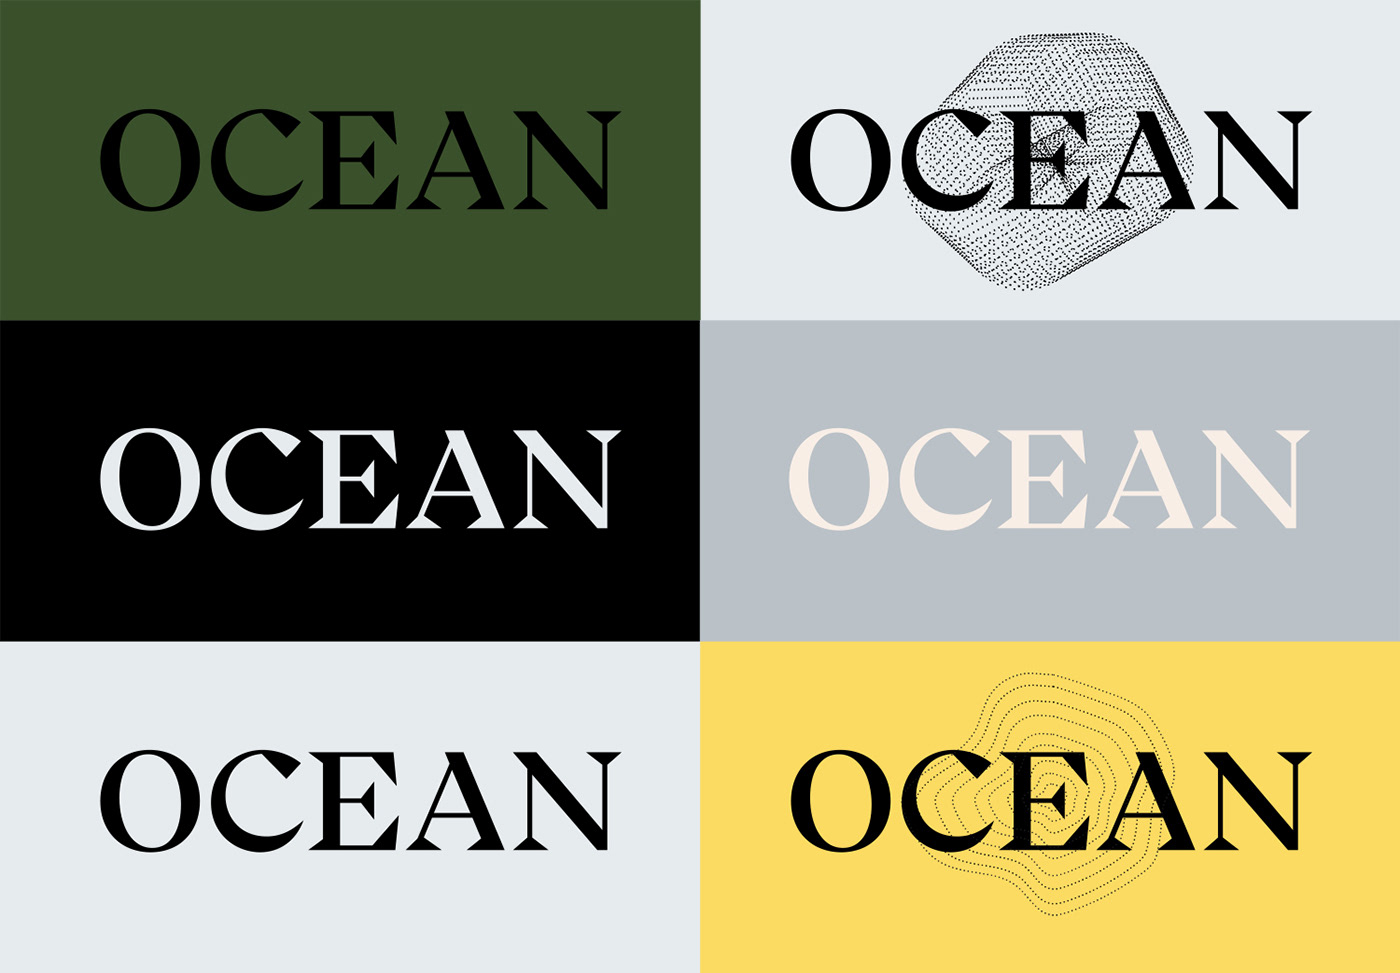 Business card design idea #446: Ocean